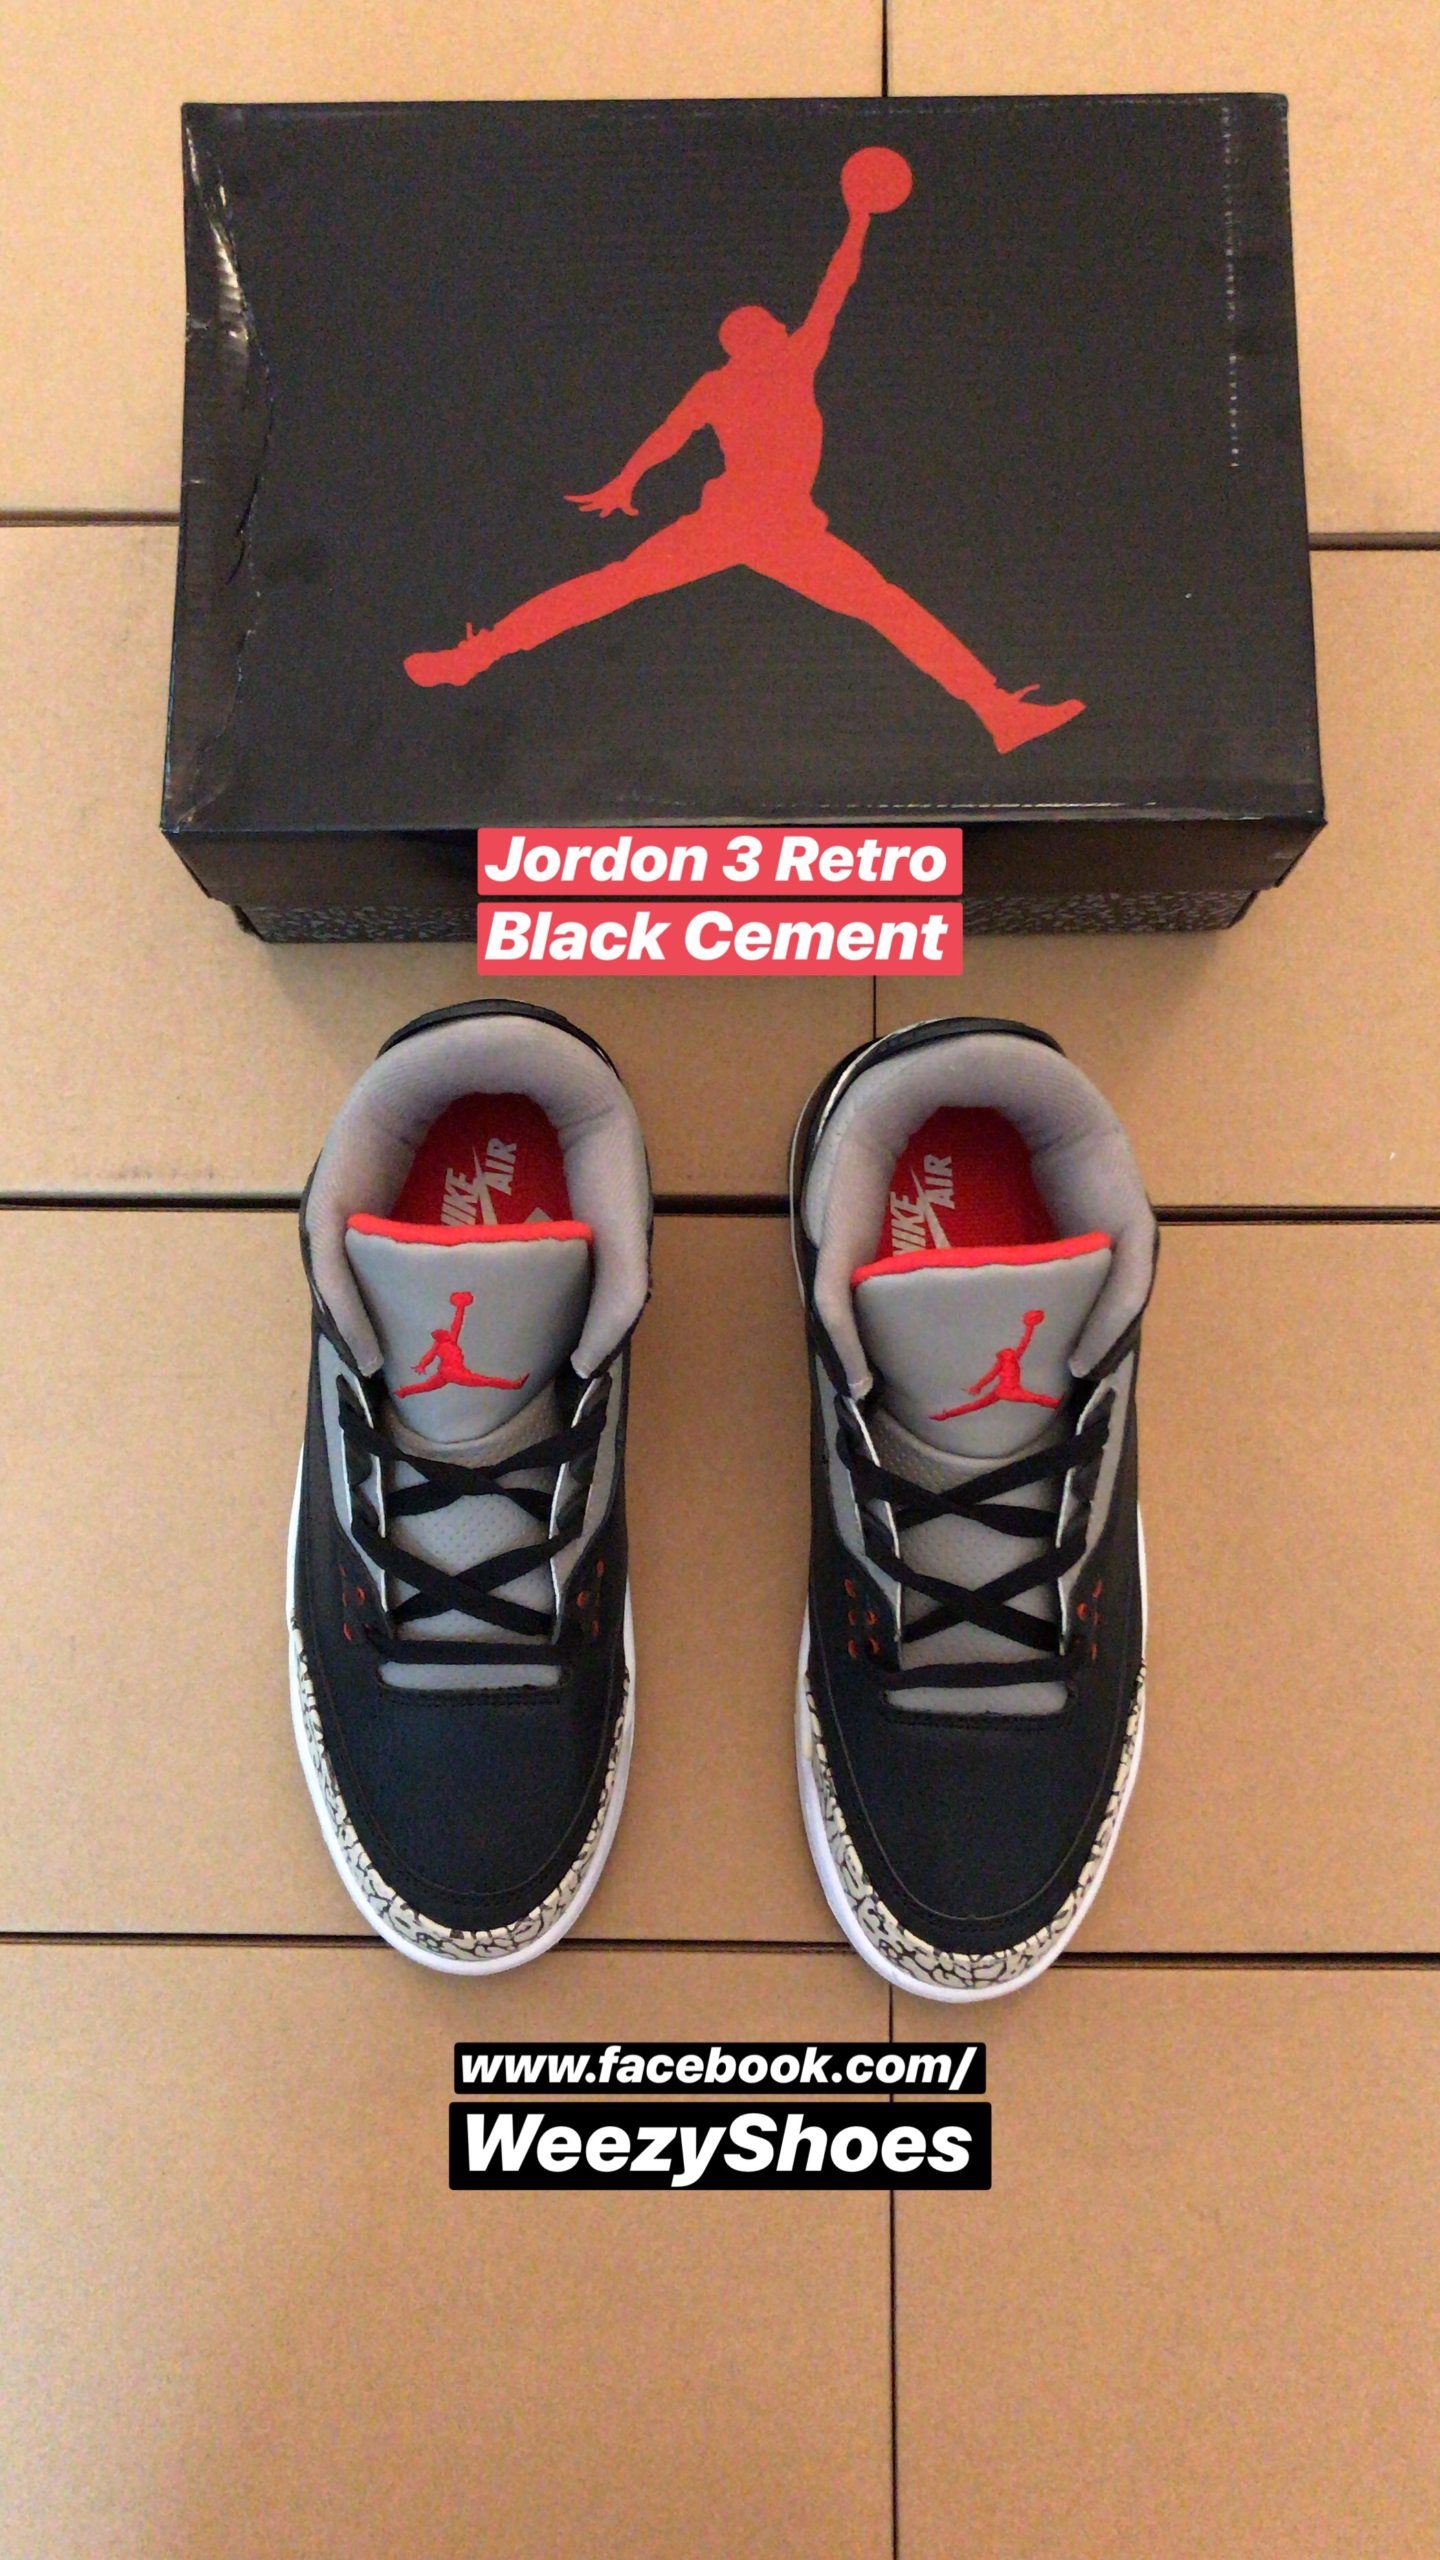 Jordan Jordon 3 Retro Cement